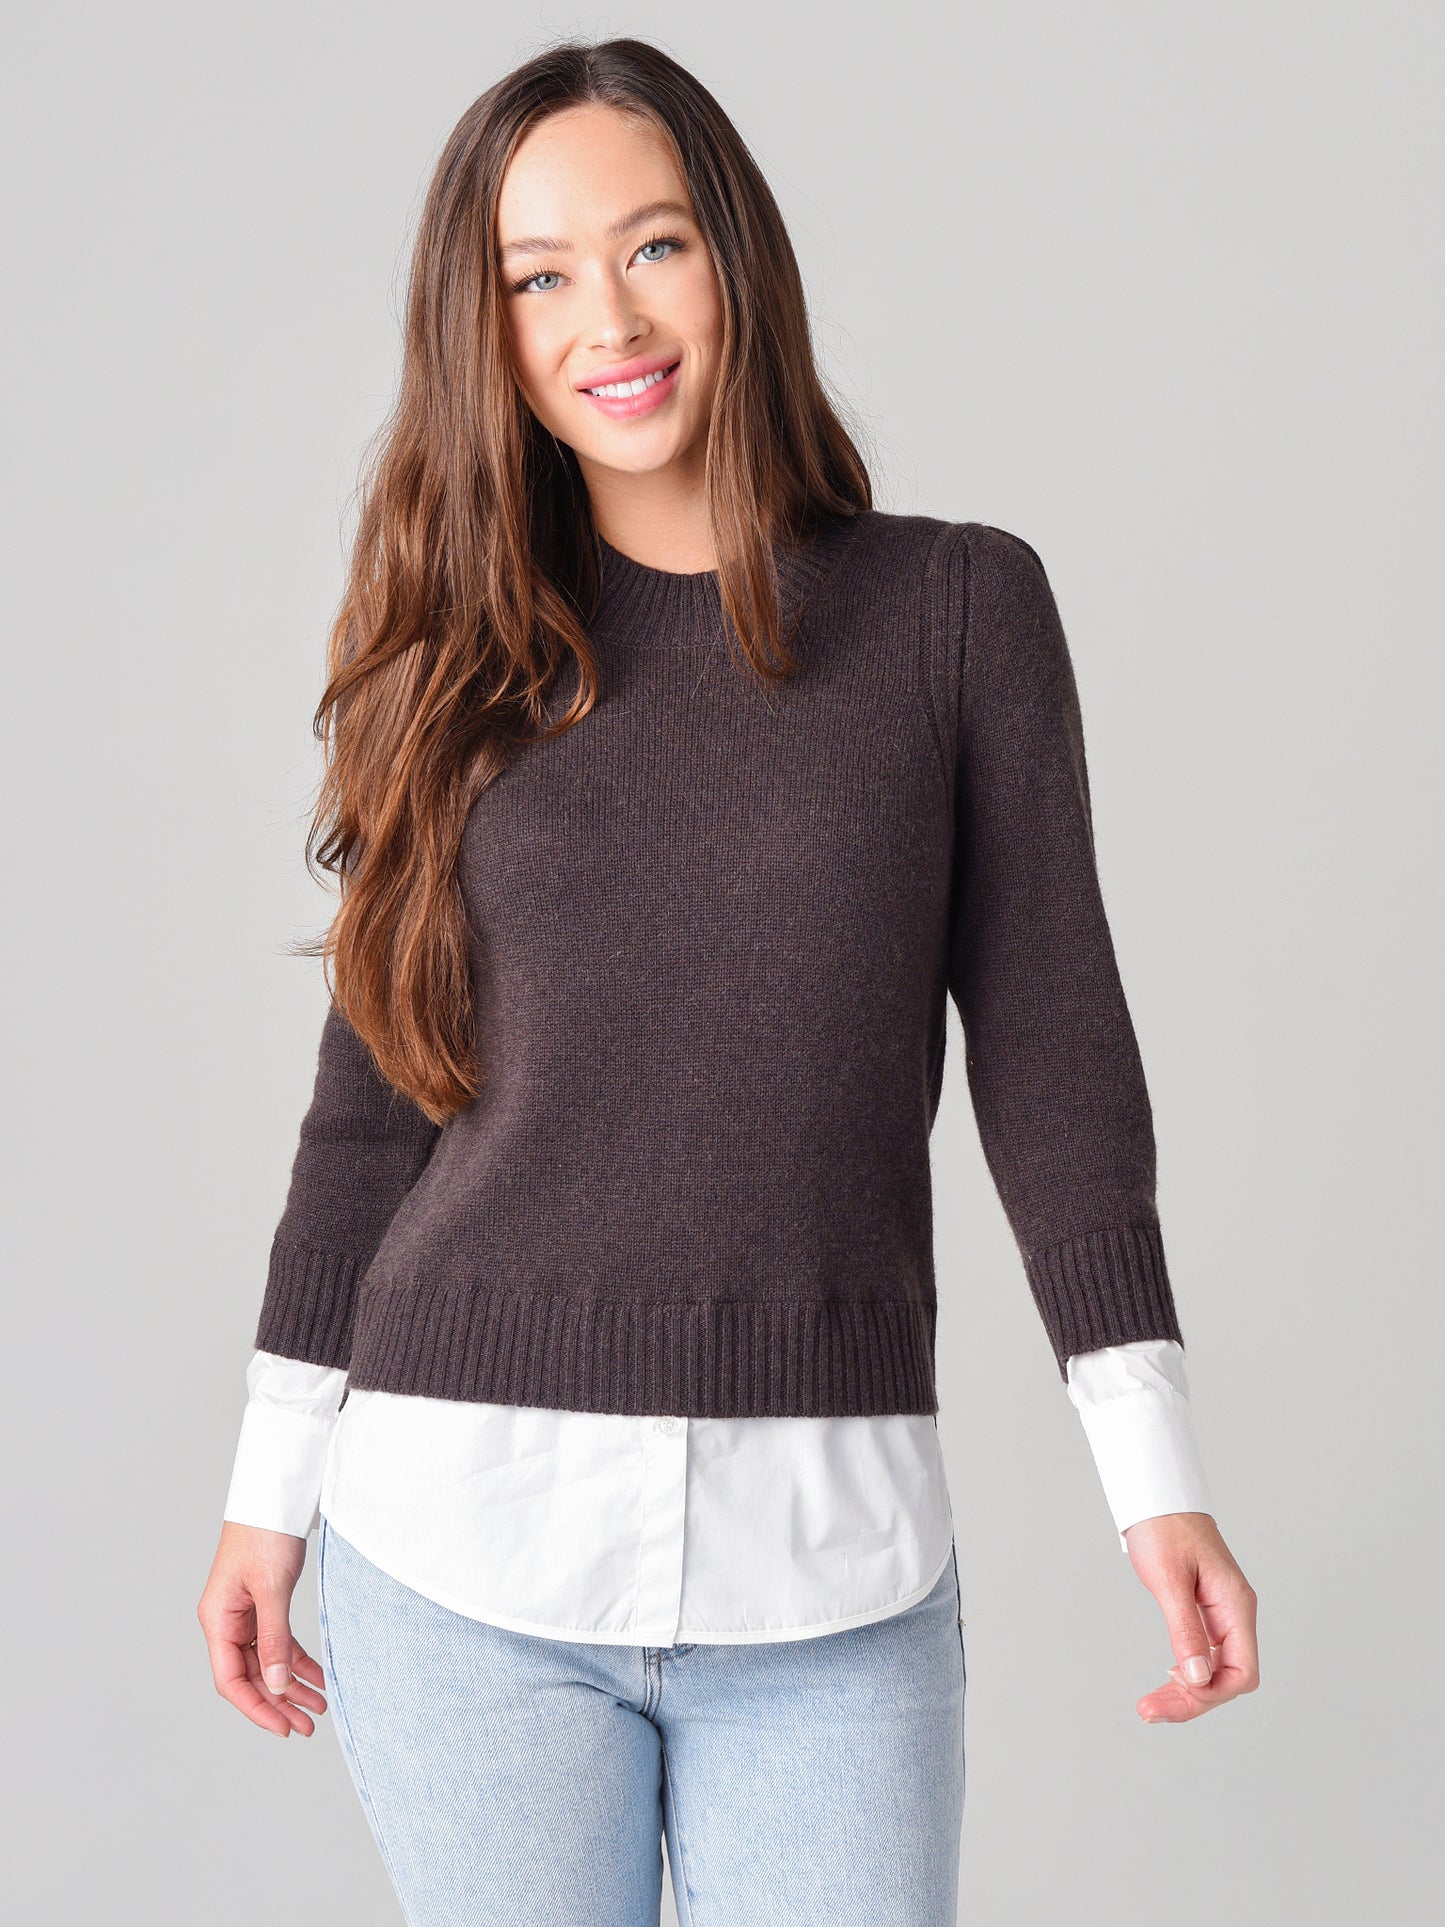 Brochu Walker Women's Eton Layered Crew Looker Sweater